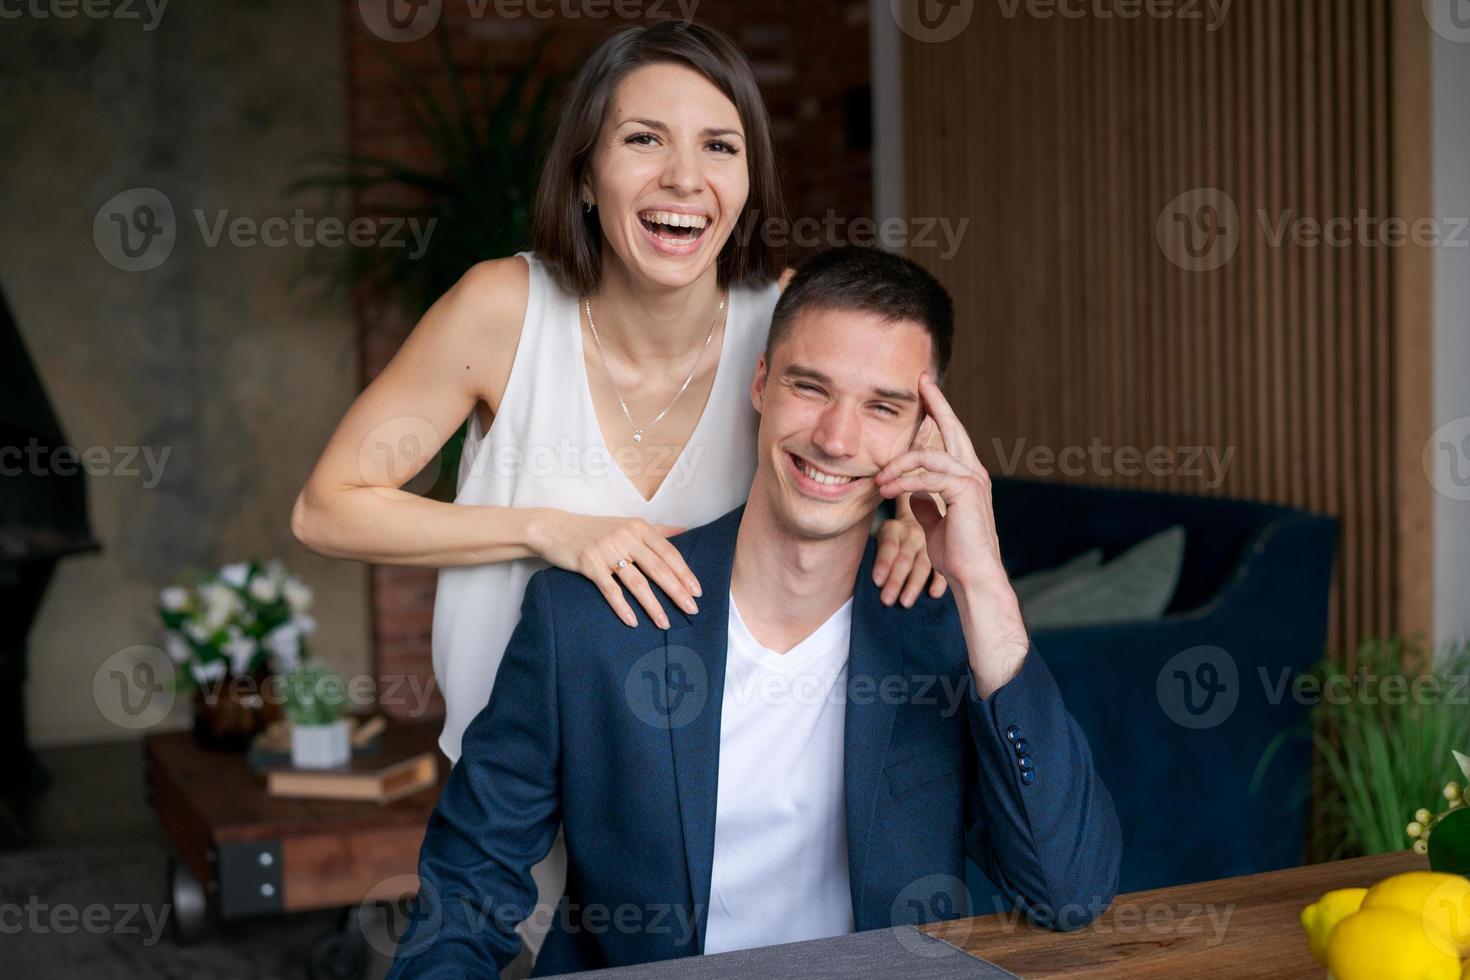 lachend opgewonden getrouwd stel verheugt zich in hun geluk door prijs te winnen foto